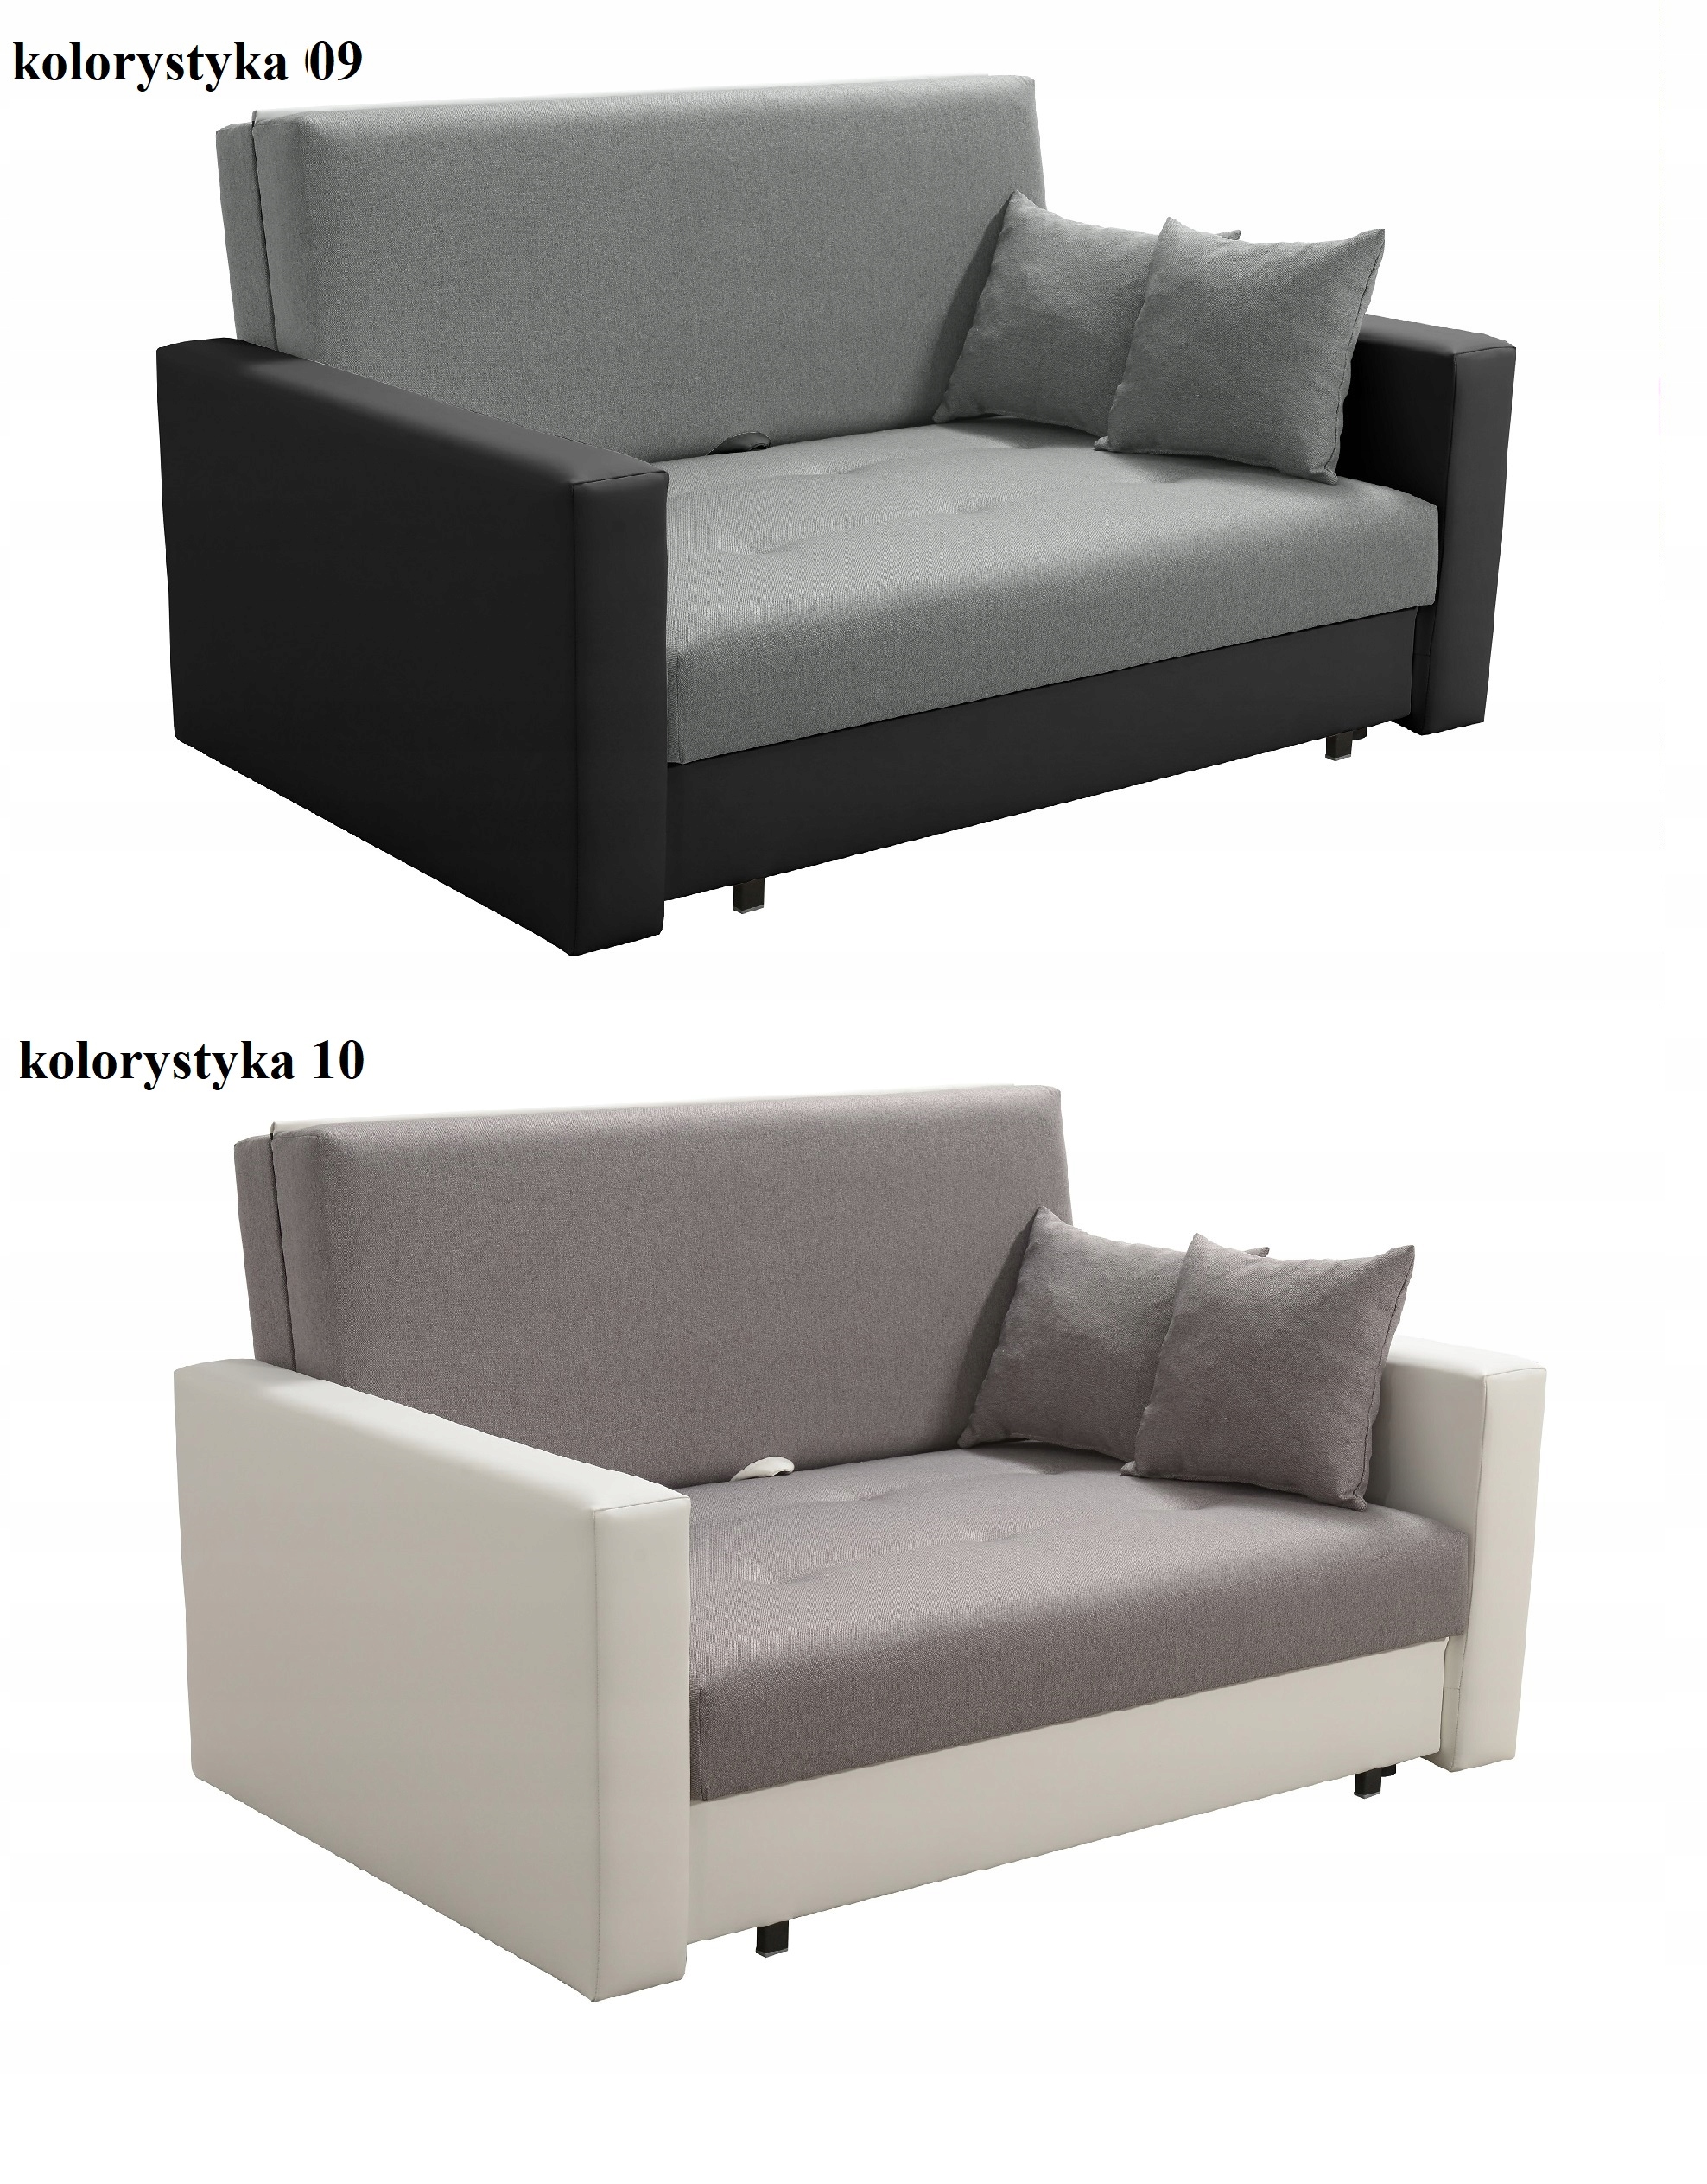 Sofa Smart - amerykanka rozkładana, fotel, dwójka Waga produktu z opakowaniem jednostkowym 55 kg